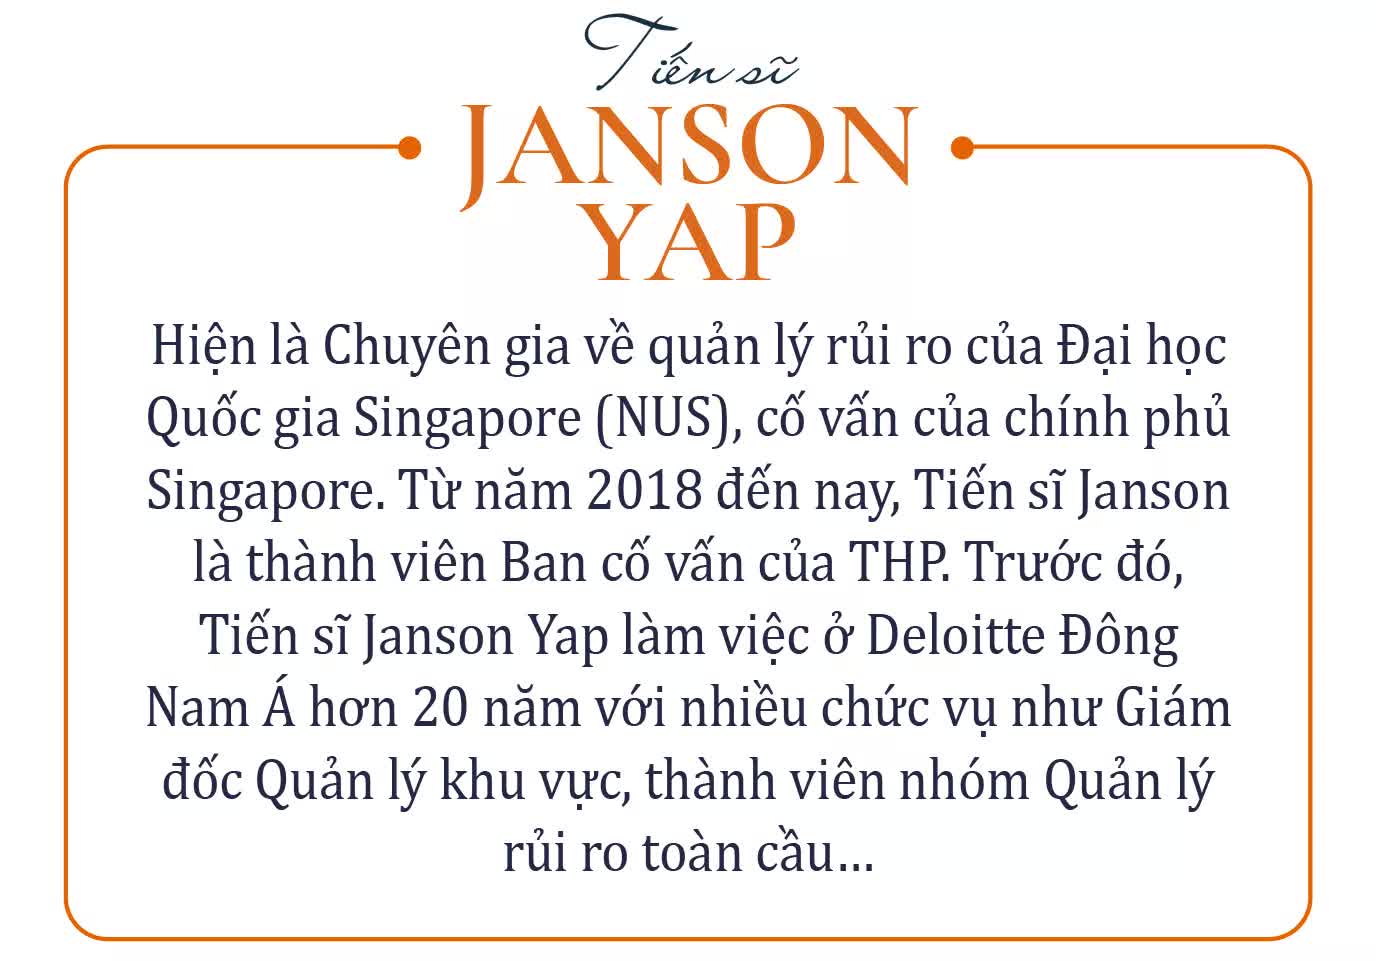 TS Janson Yap - Cố vấn của chính phủ Singapore: ‘Muốn chuyển đổi số thành công, cần tập trung vào khách hàng và đừng trở nên tuyệt vời một mình!’ - Ảnh 1.